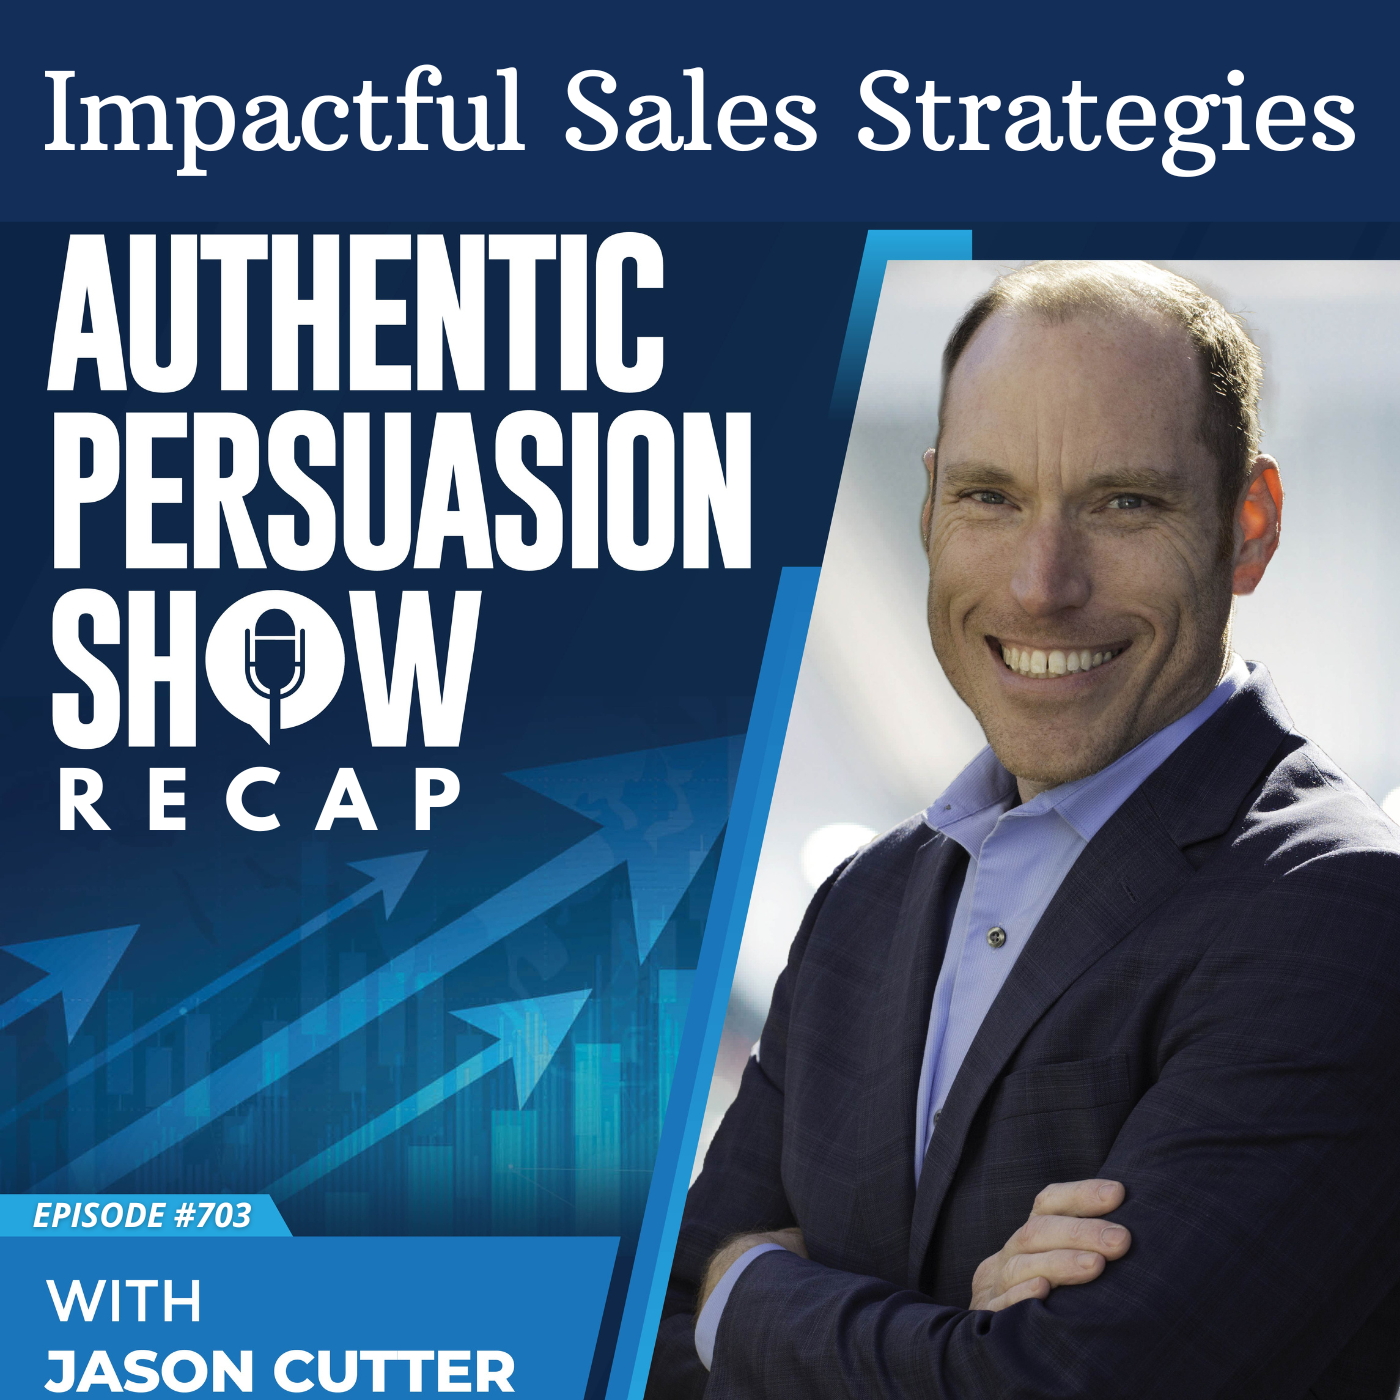 [703] Impactful Sales Strategies